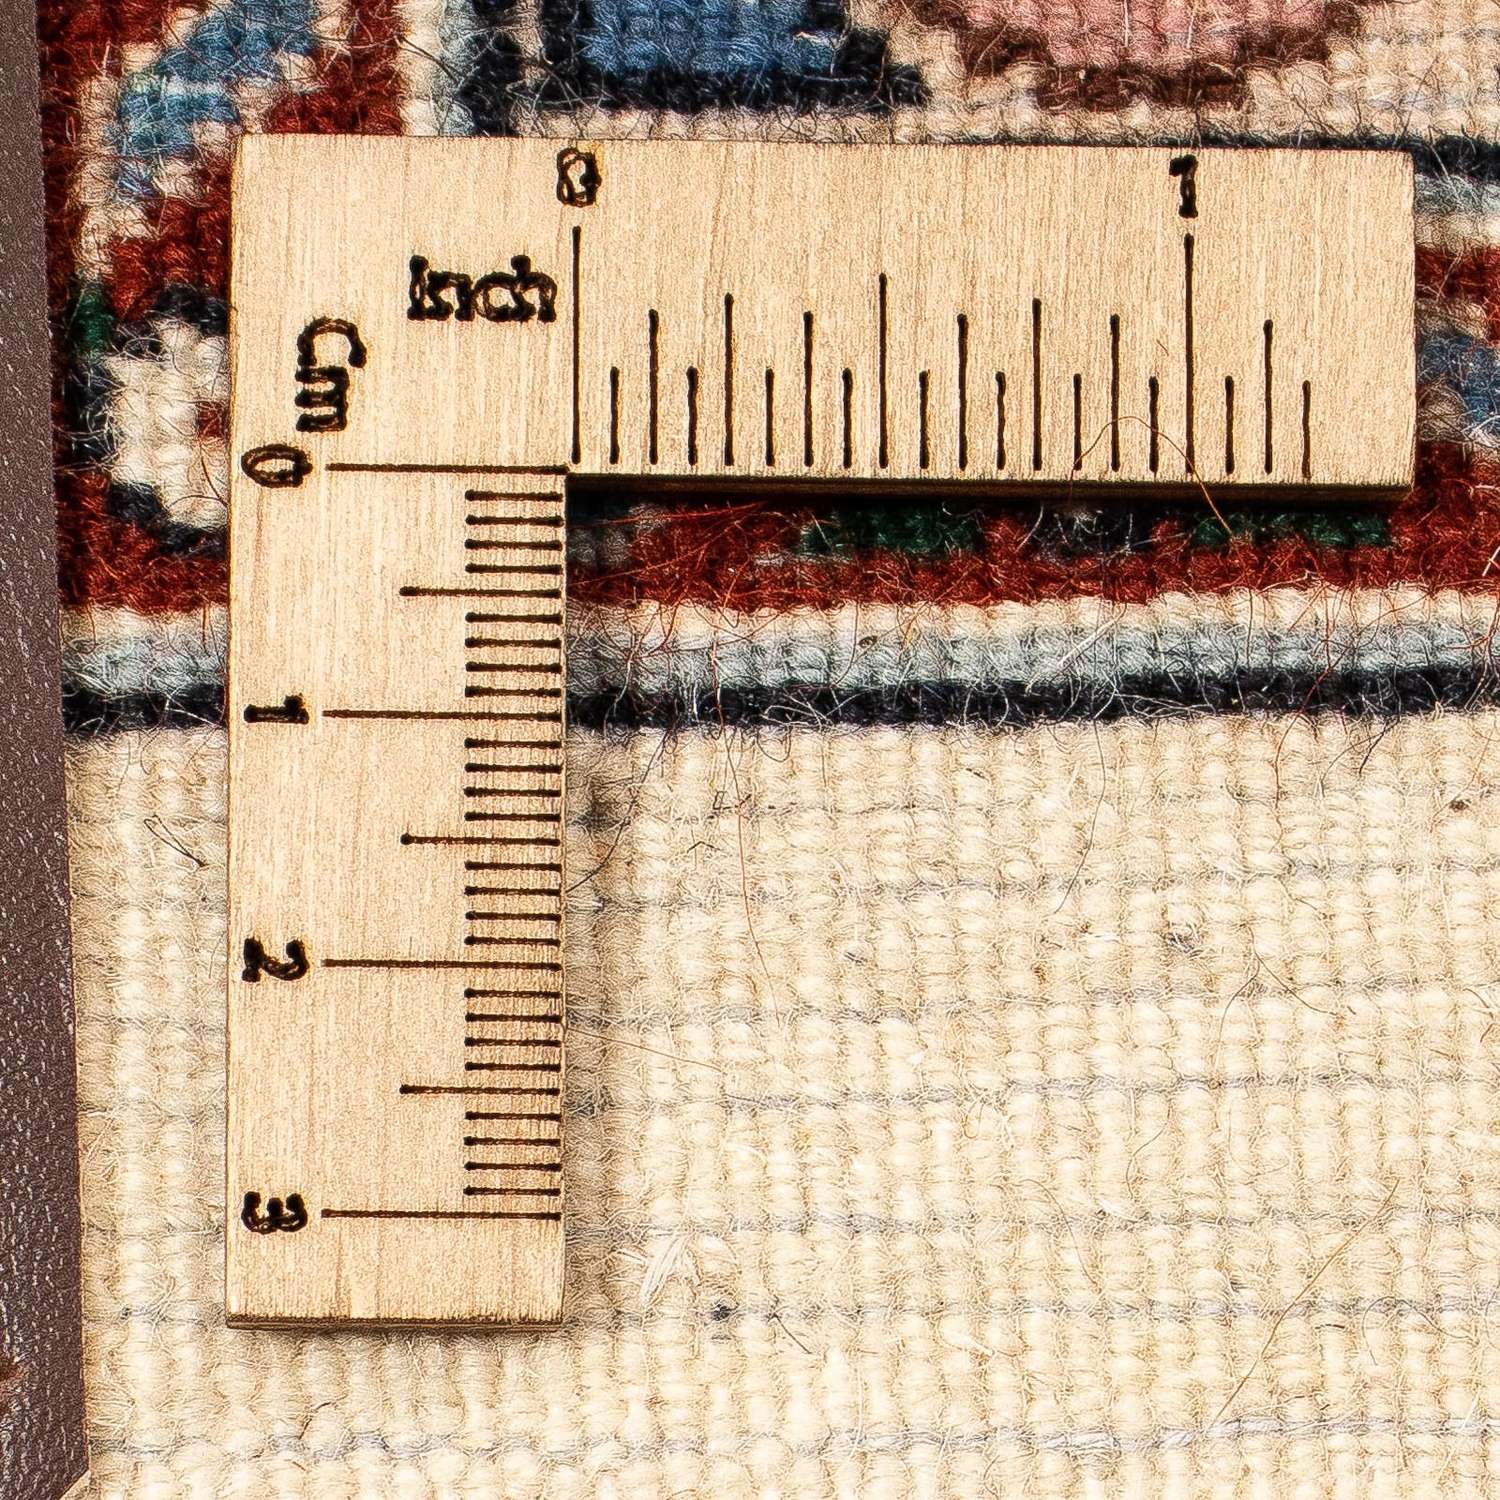 Tapis persan - Classique carré  - 262 x 250 cm - marron clair